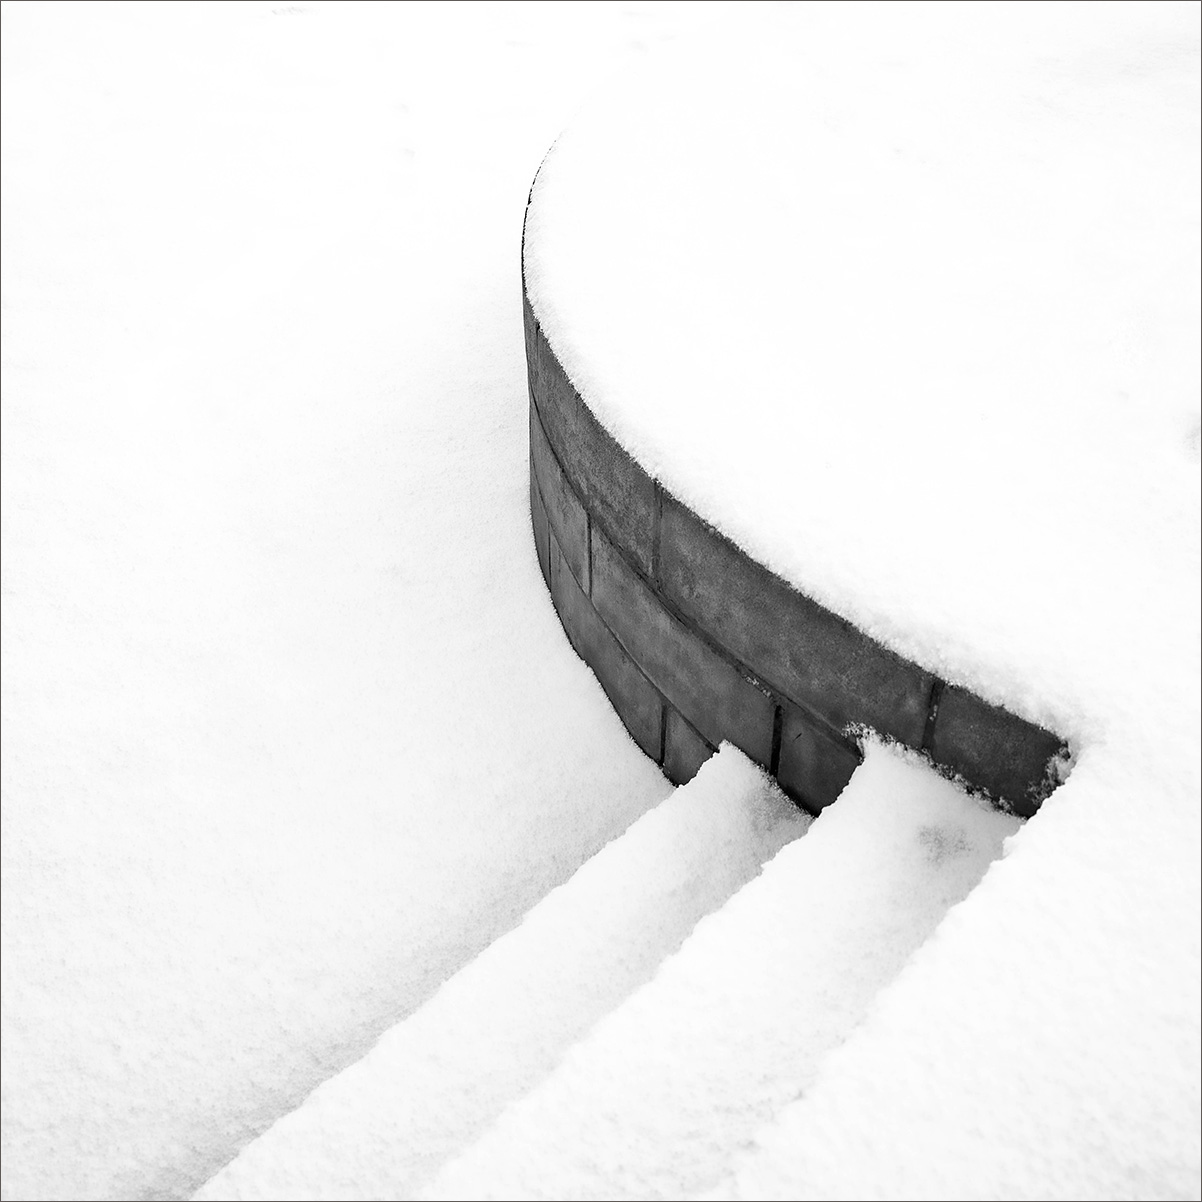 Snowy Steps by Steven Whittaker ARPS